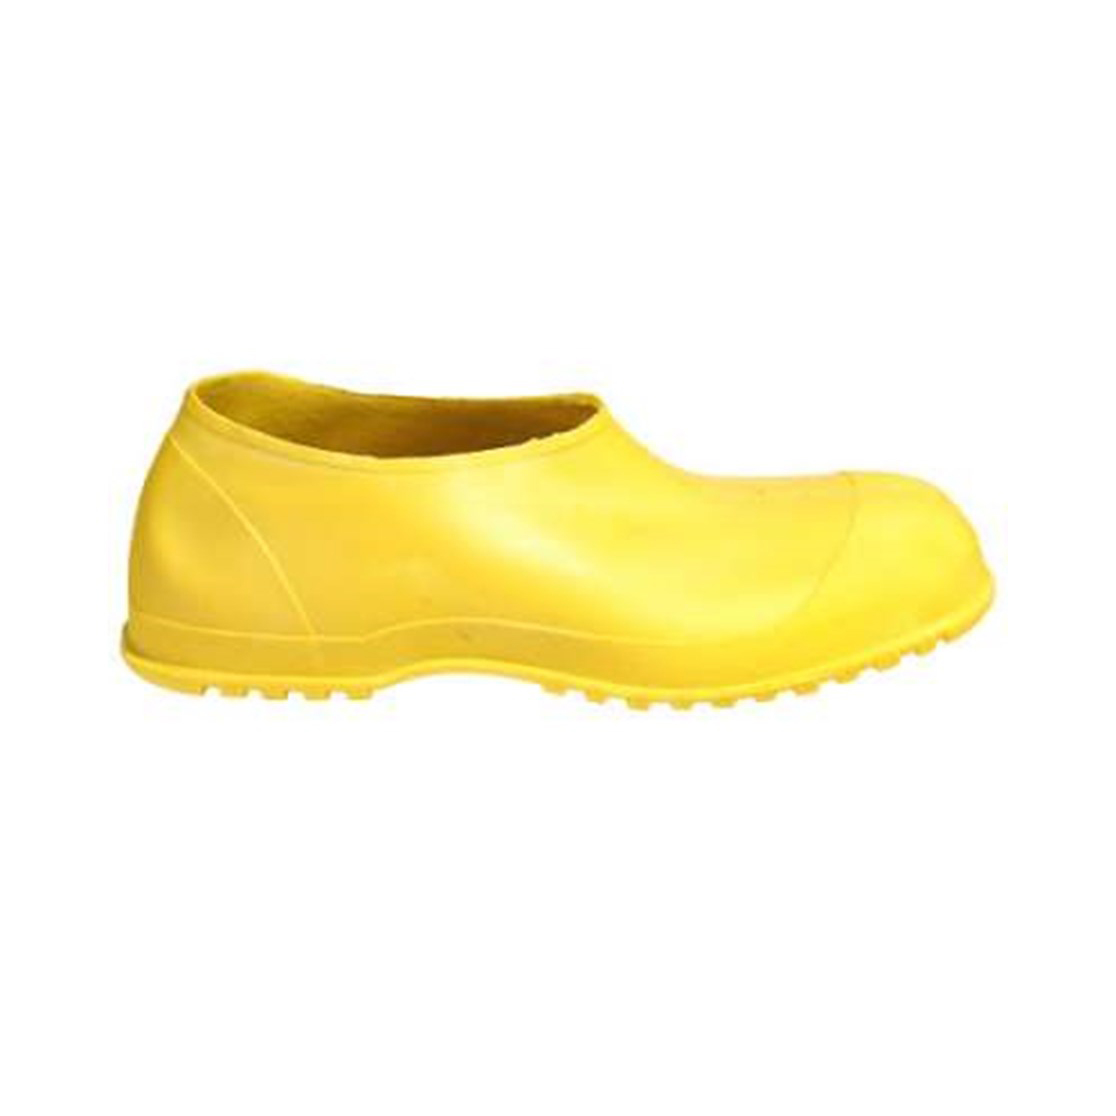 Tingley Workbrutes Overshoe, Yellow #35113